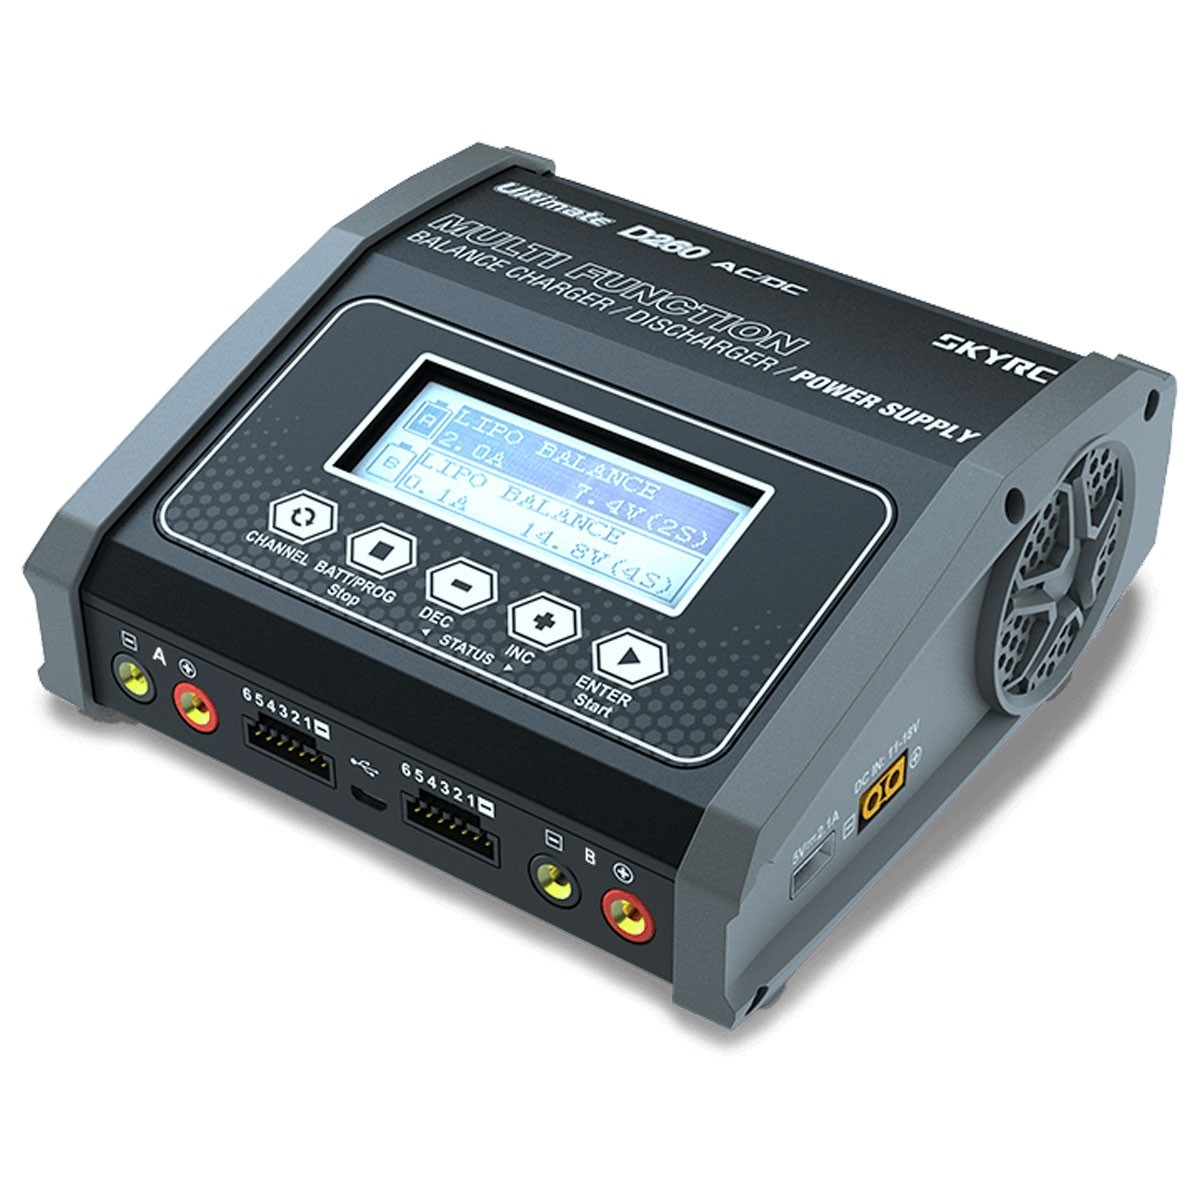 Chargeur de batterie AGM 110-220v-12v 1300mA